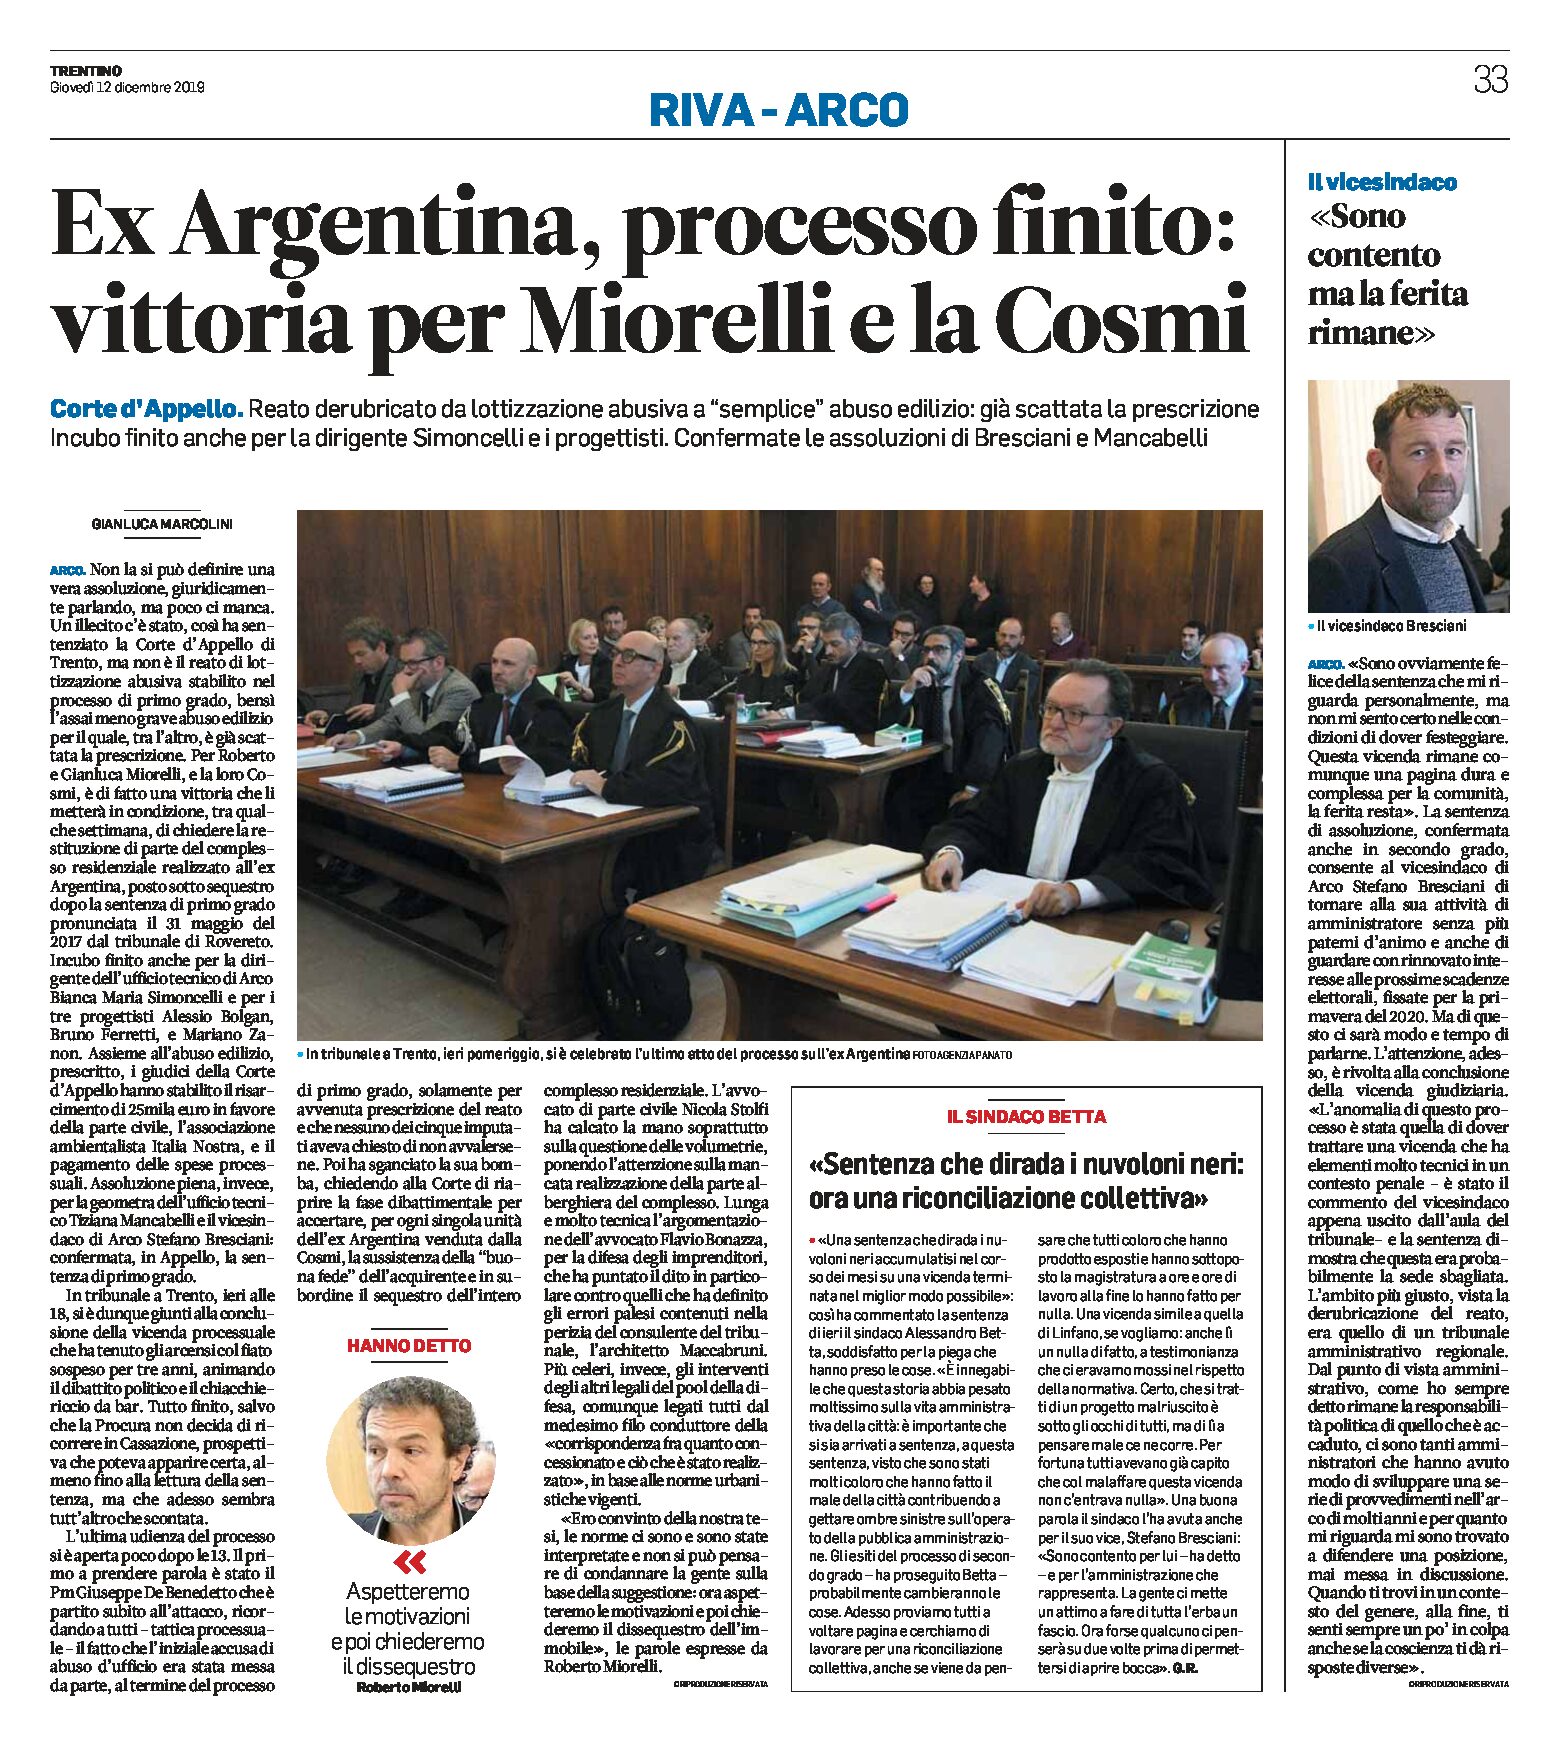 Ex Argentina: processo finito, vittoria per Miorelli e la Cosmi. Reato derubricato, già scattata la prescrizione